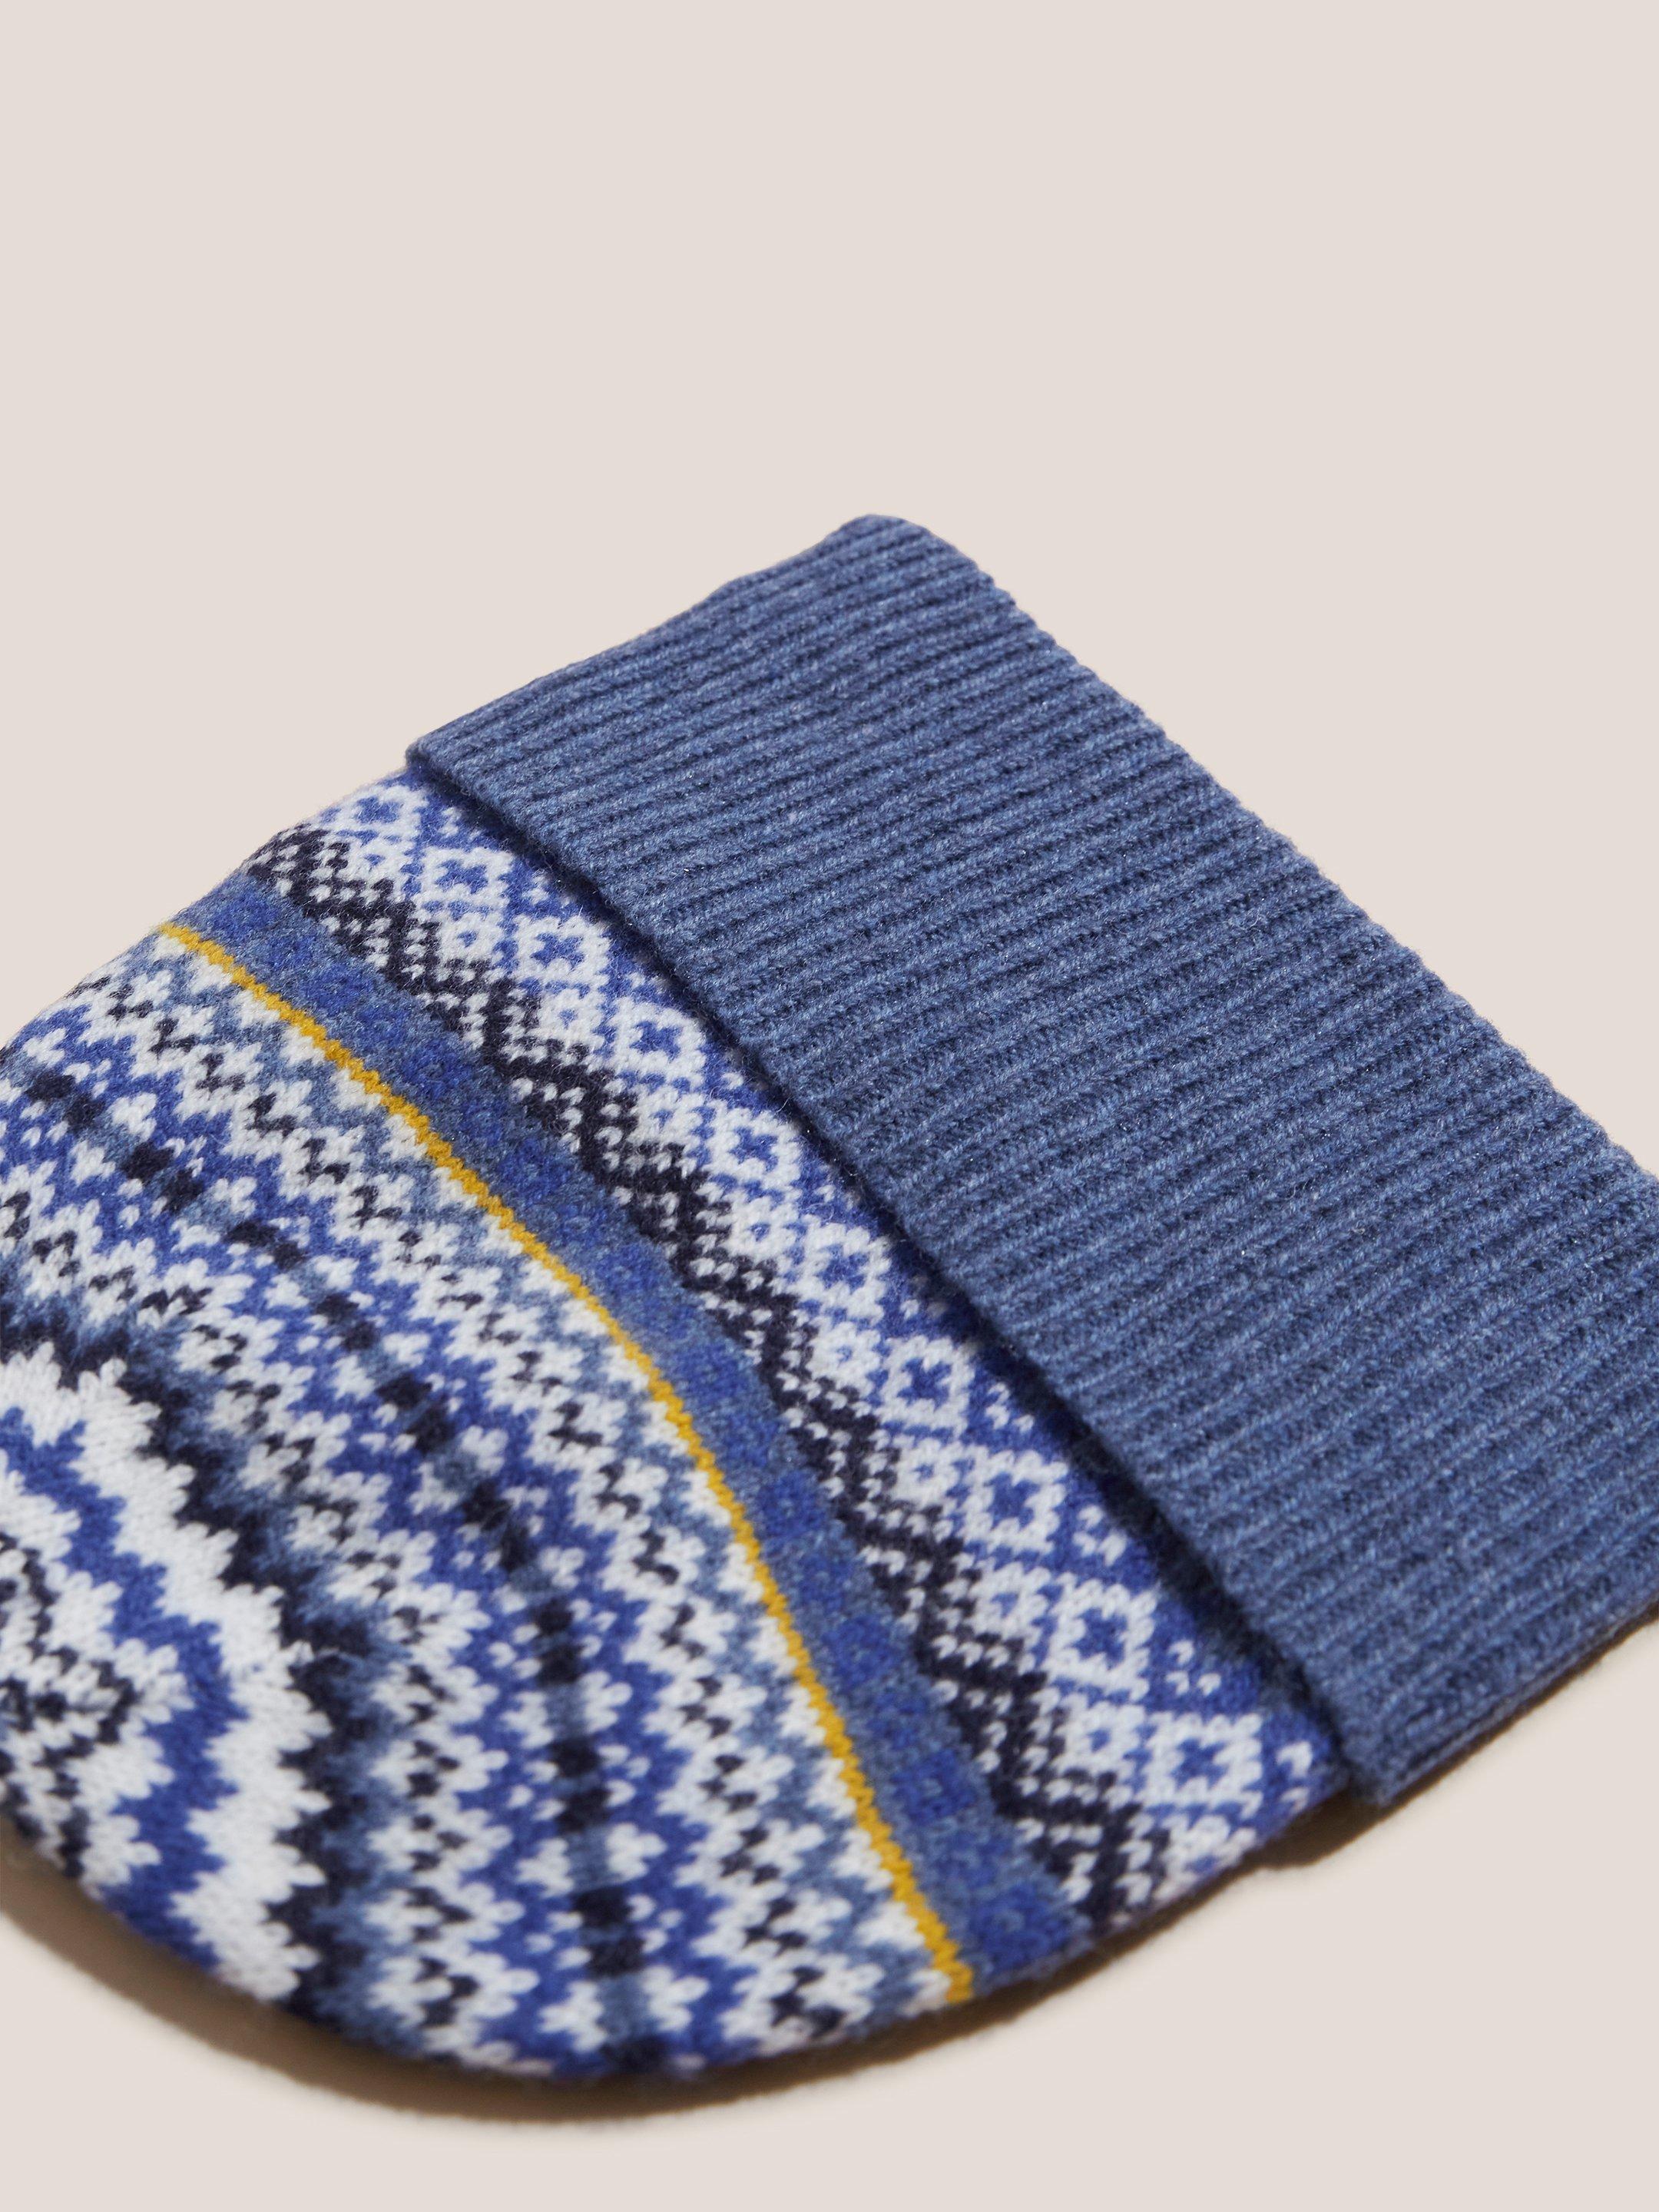 Mixed Fairisle Knitted Beanie in BLUE MLT - FLAT BACK